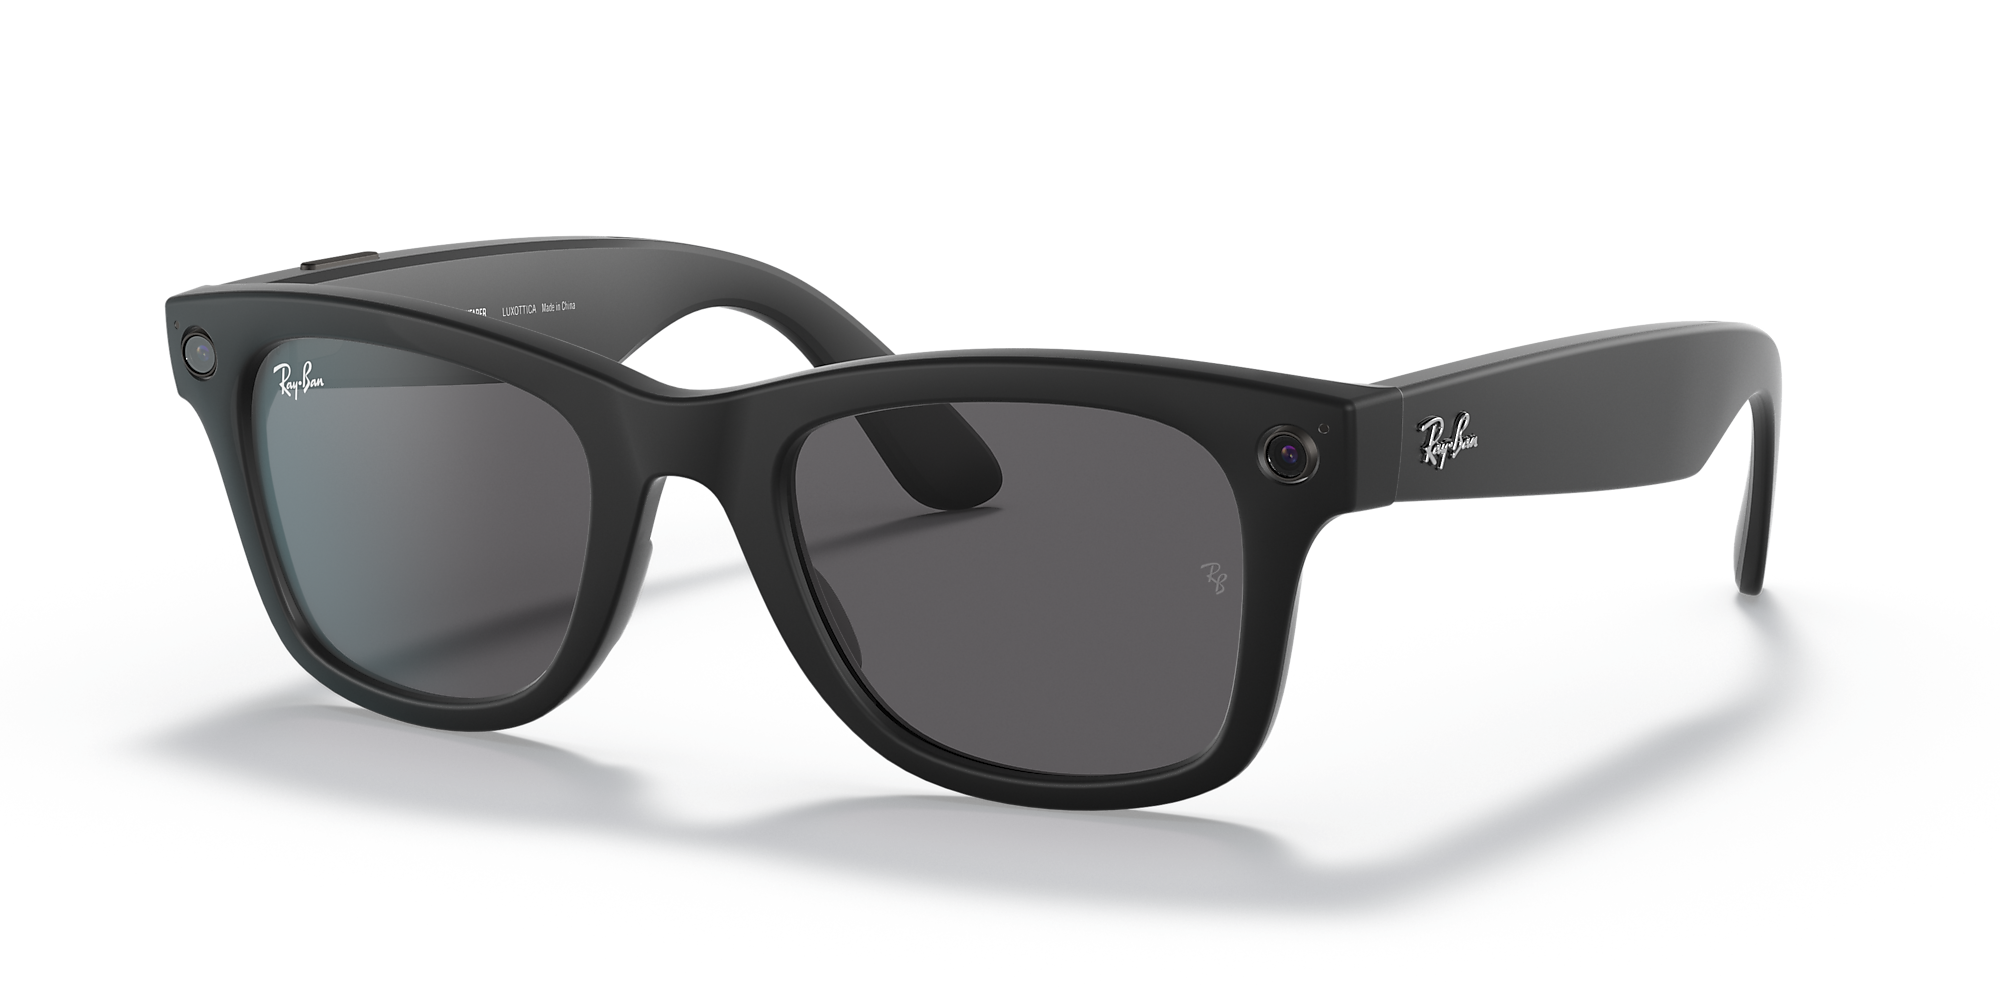 Ray-Ban New Wayfarer Sunglasses Rubber Black W/ G-15 Green Lenses RB2132  622 55 | eBay